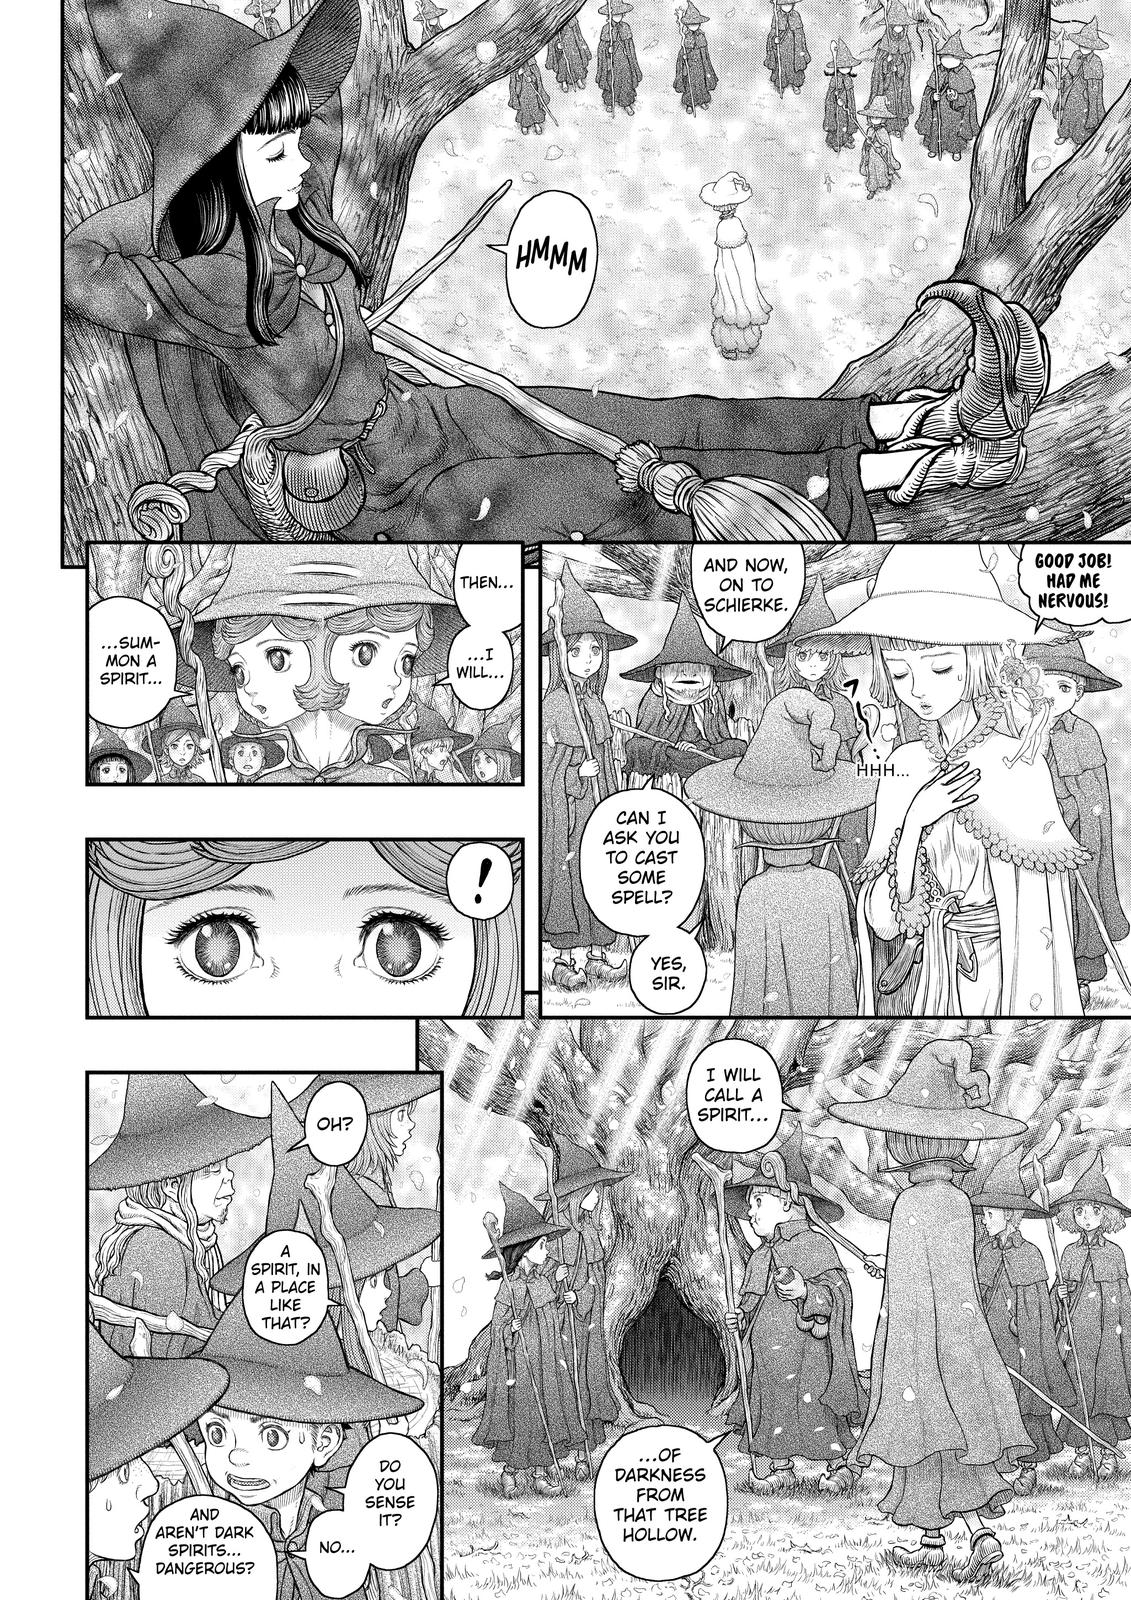 Berserk Manga Chapter 360 image 08